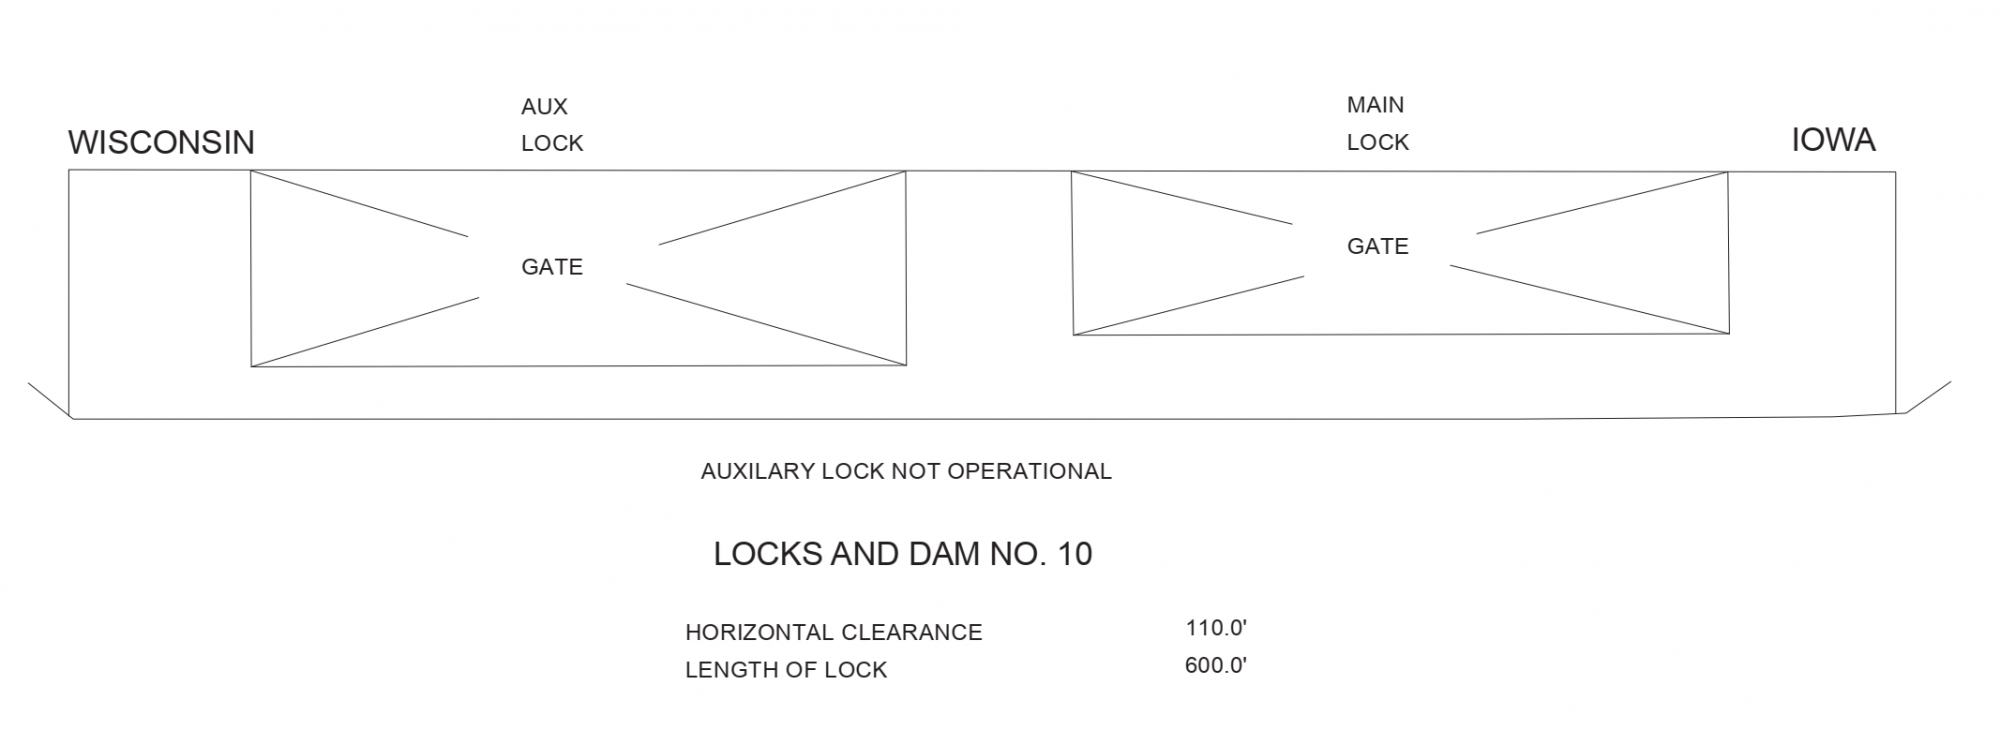 Guttenberg Lock And Dam No. 10 Clearances | Bridge Calculator LLC